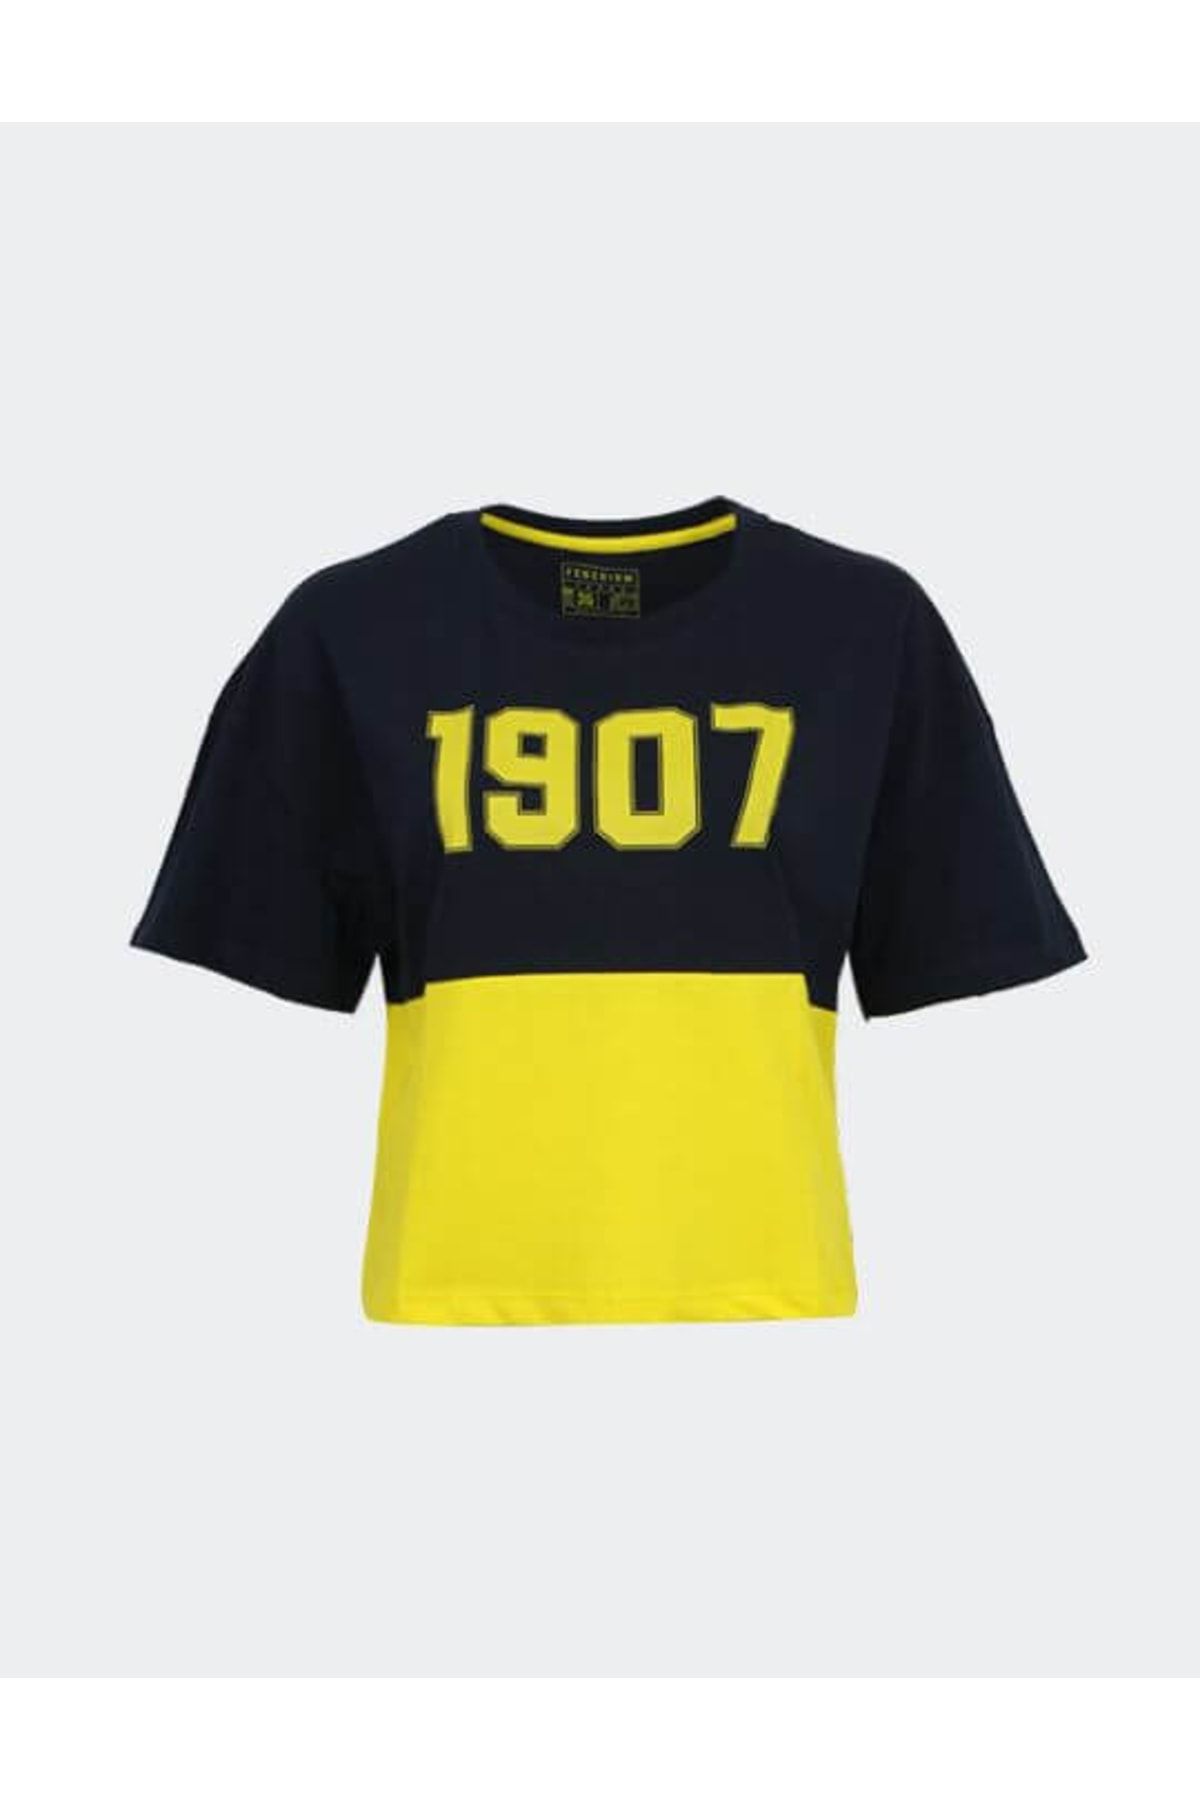 Fenerbahçe KADIN TREND 1907 TSHIRT